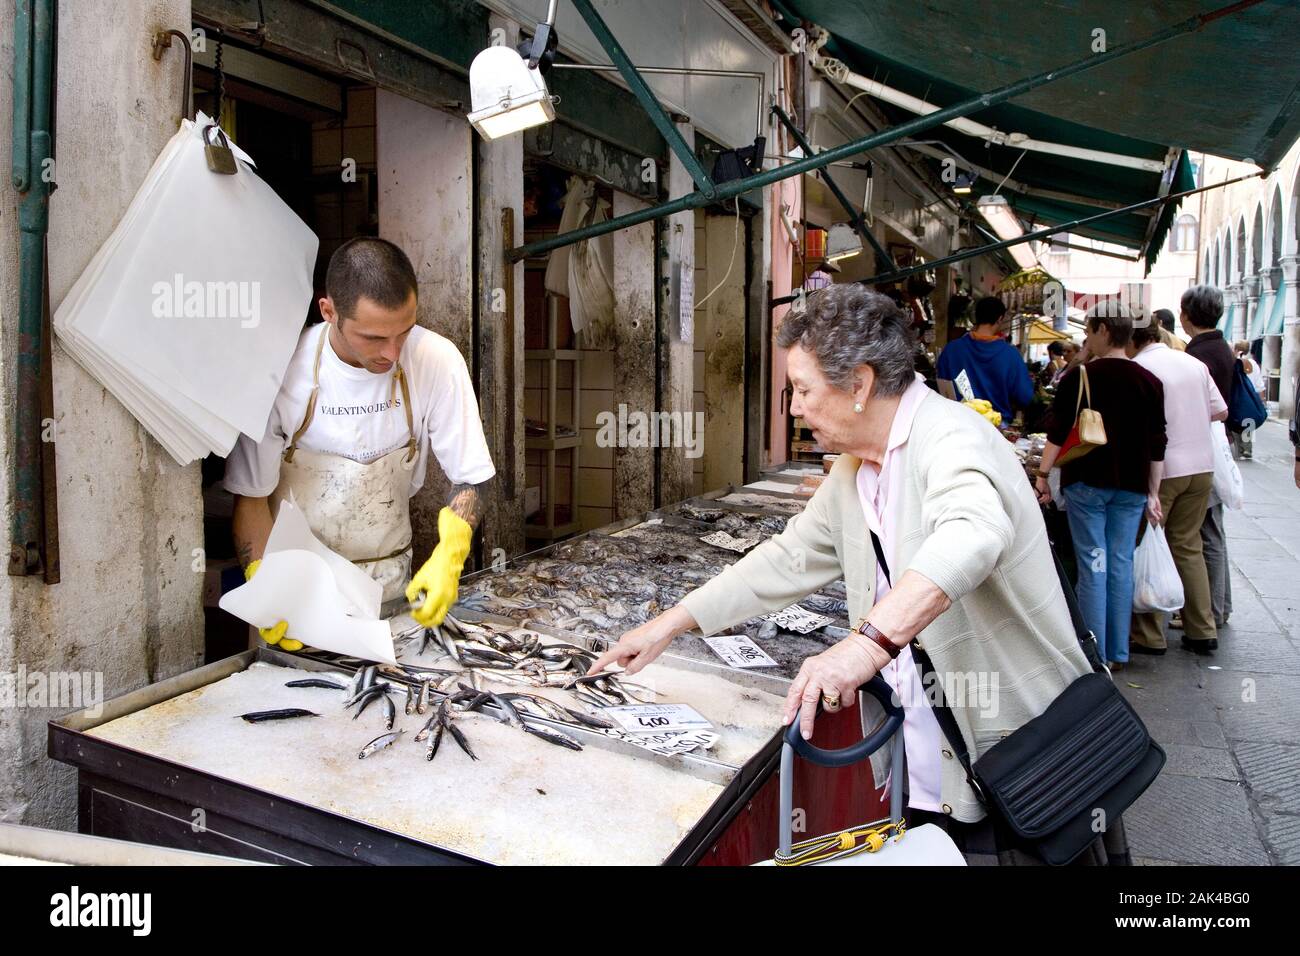 Fischverkauf auf dem Rialtomarkt, Venedig | usage worldwide Stock Photo